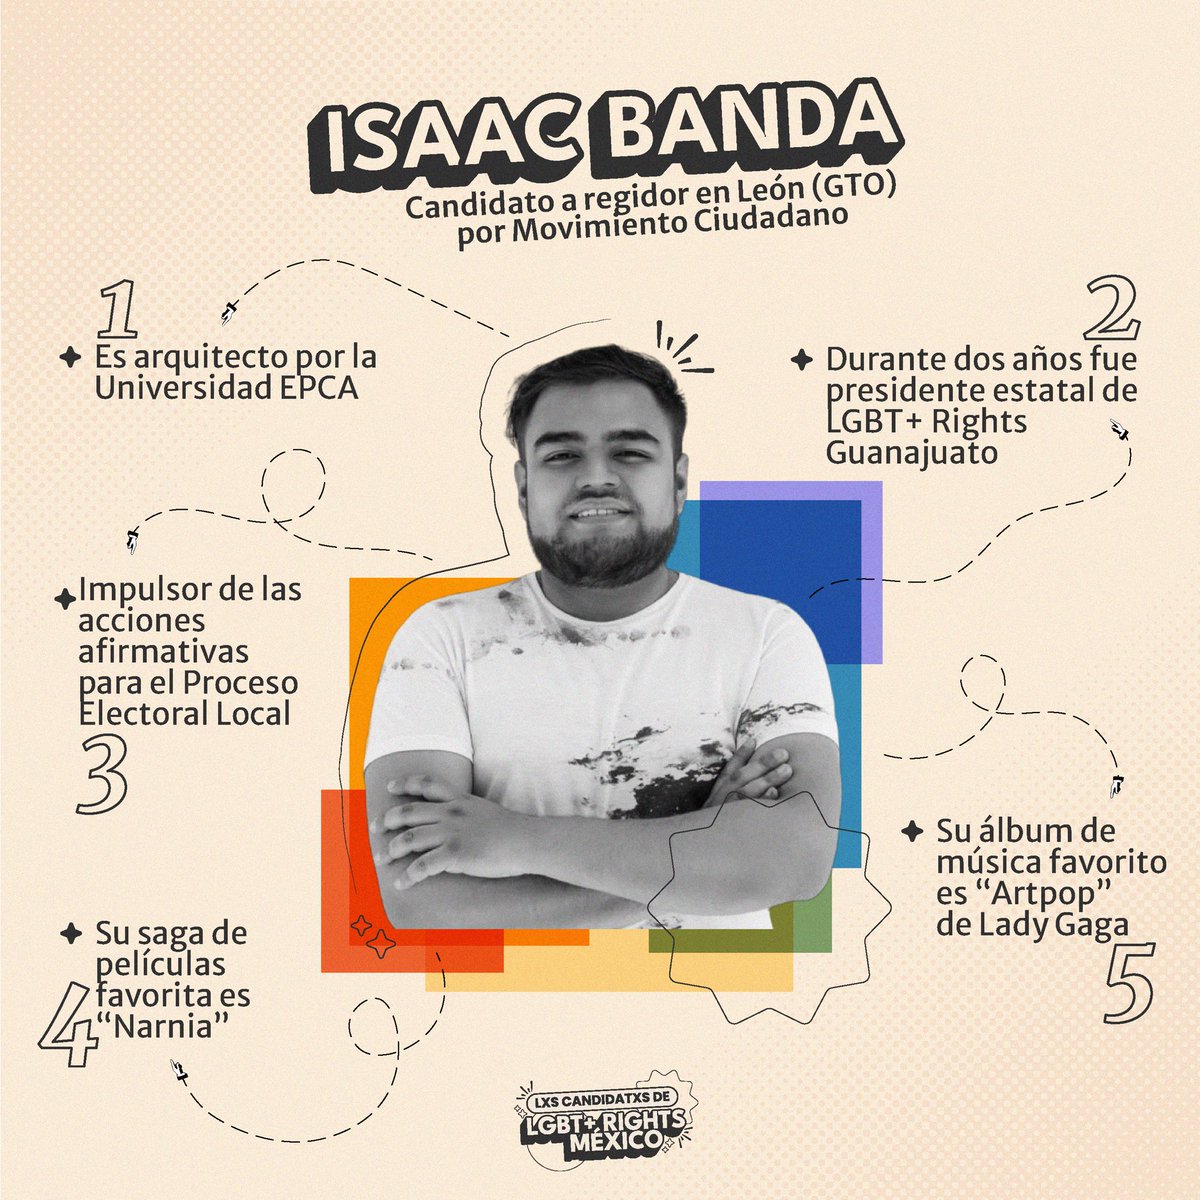 Conoce a Isaac Banda (@SoyIsaacBanda), candidato a regidor en León, Guanajuato por @MovCiudadanoMX Durante dos años fue presidente de nuestra organización. 👇🏽